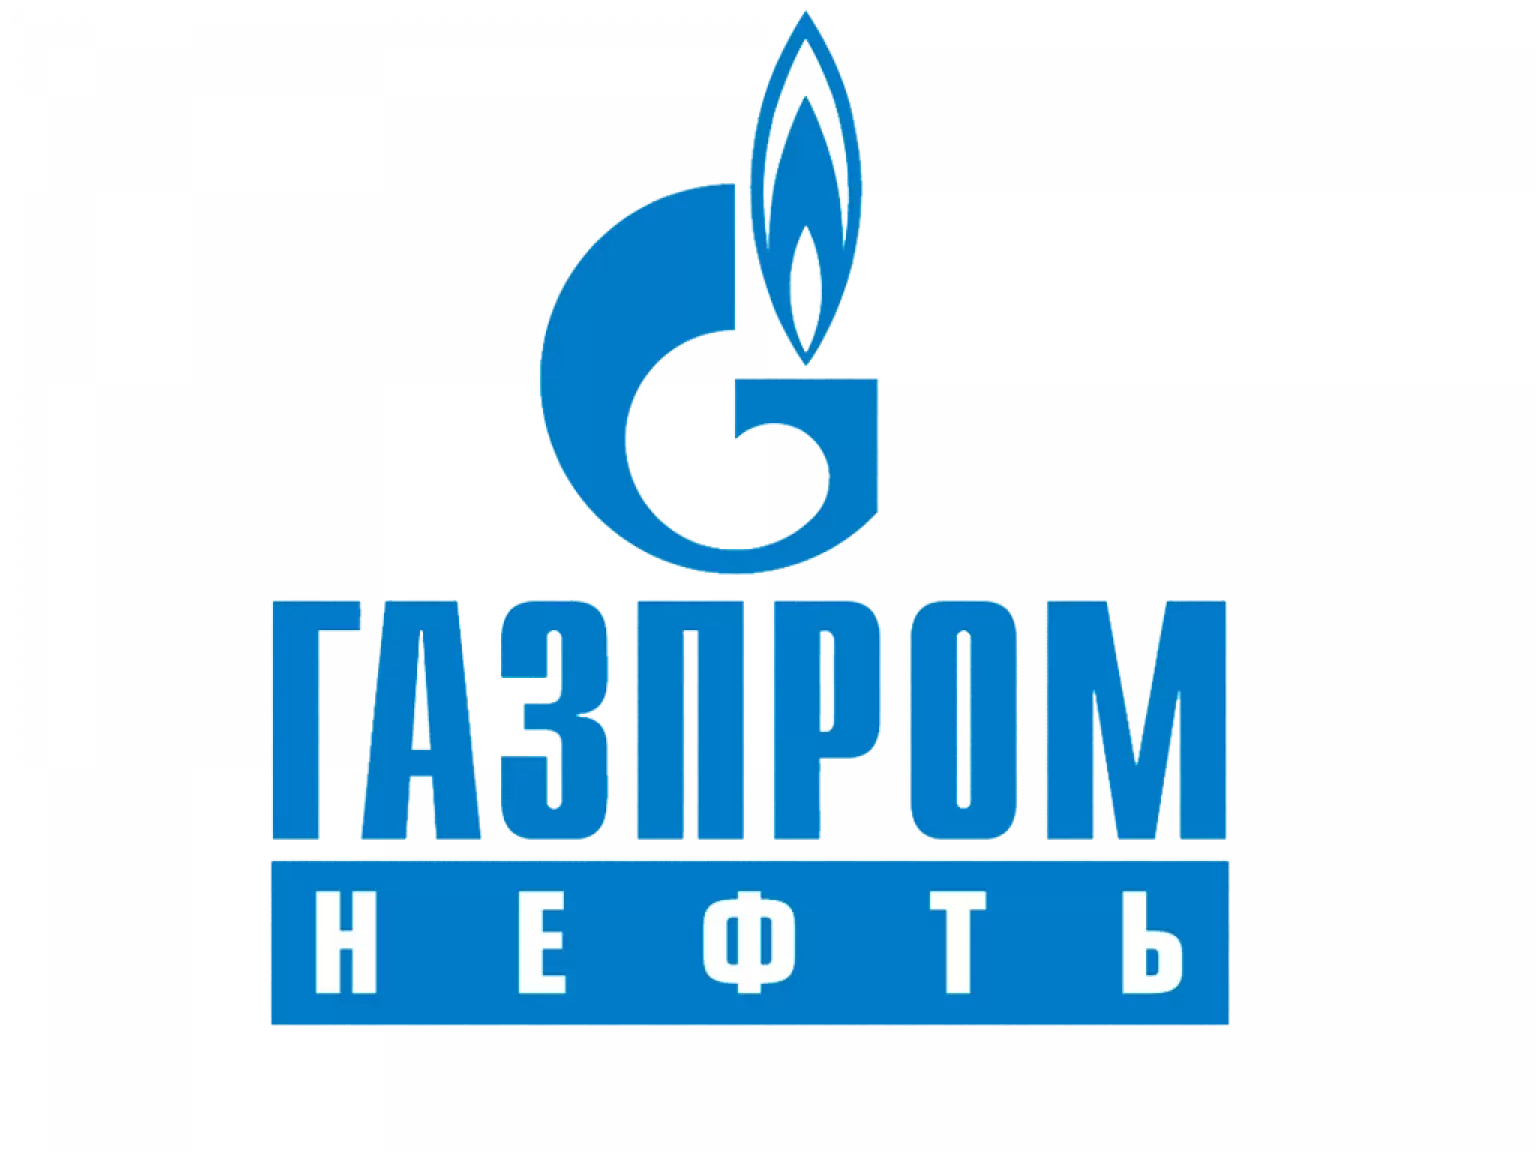 gazprom-1536x1152